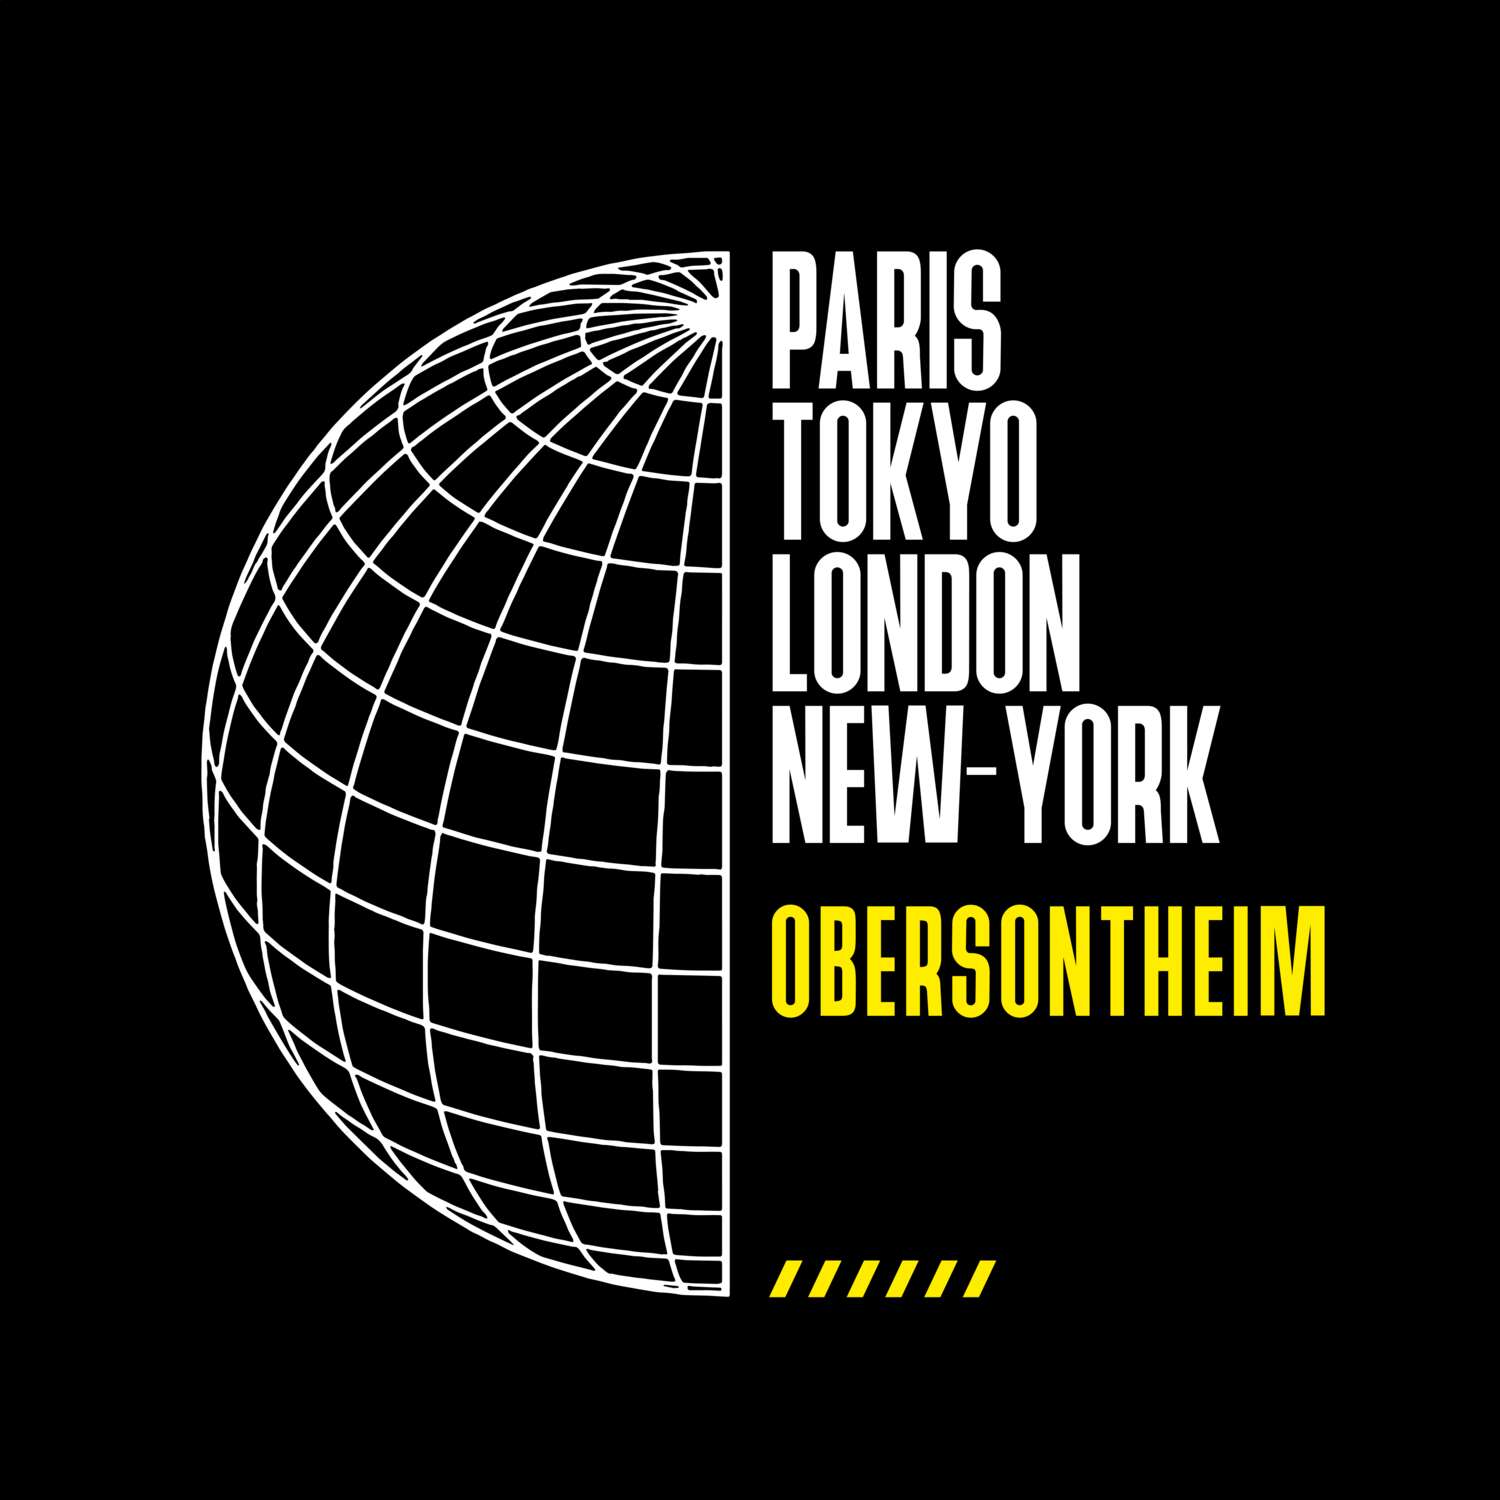 Obersontheim T-Shirt »Paris Tokyo London«